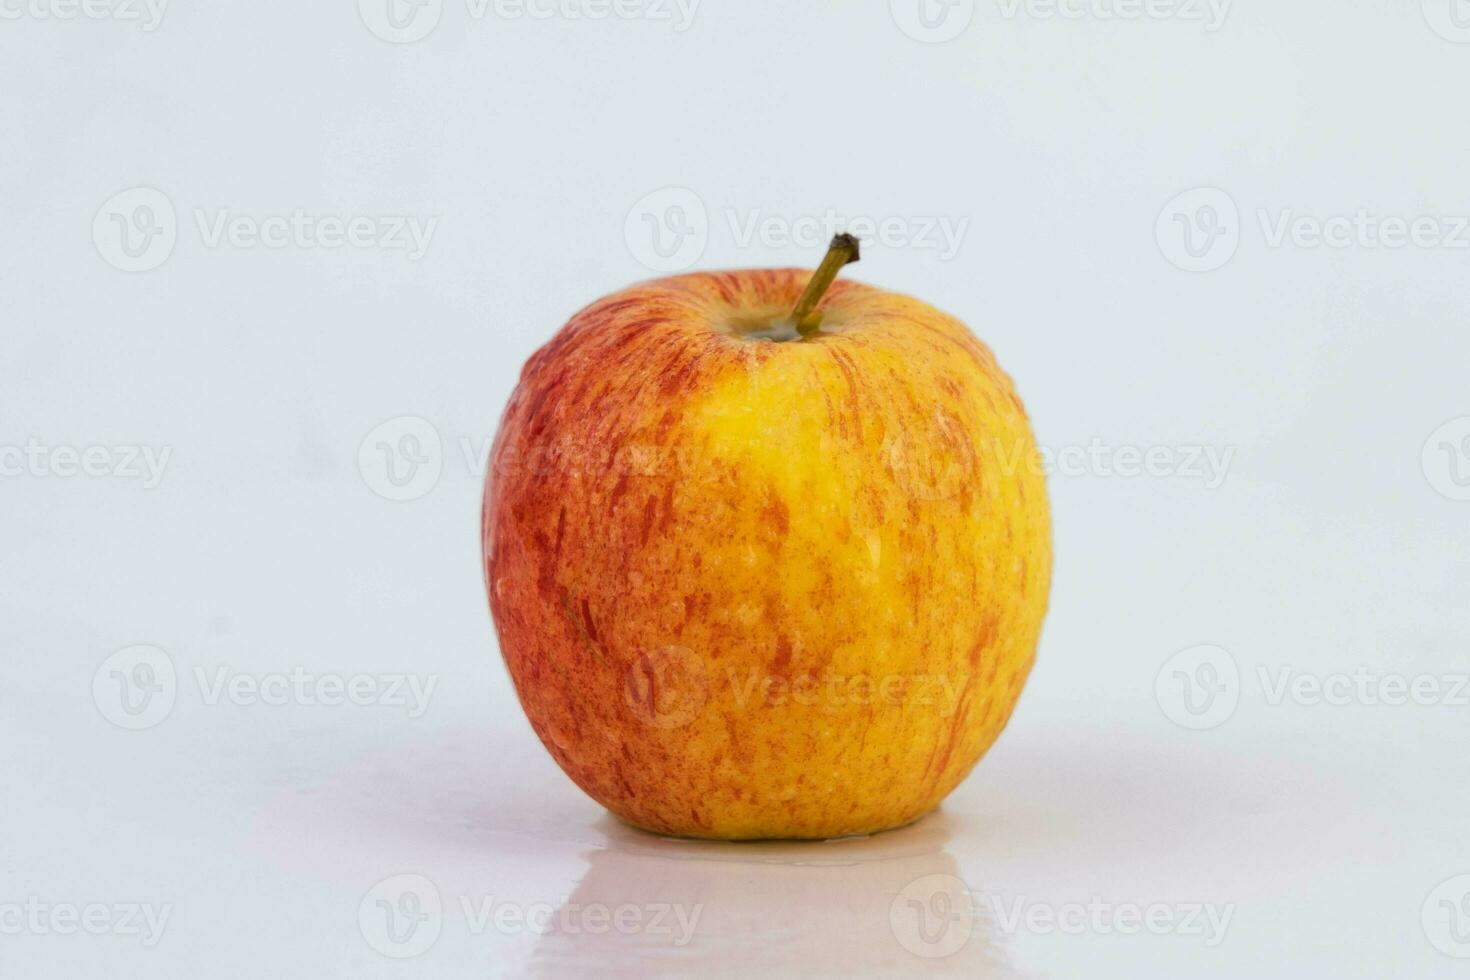 frischer roter Apfel isoliert auf weißem Hintergrund. foto